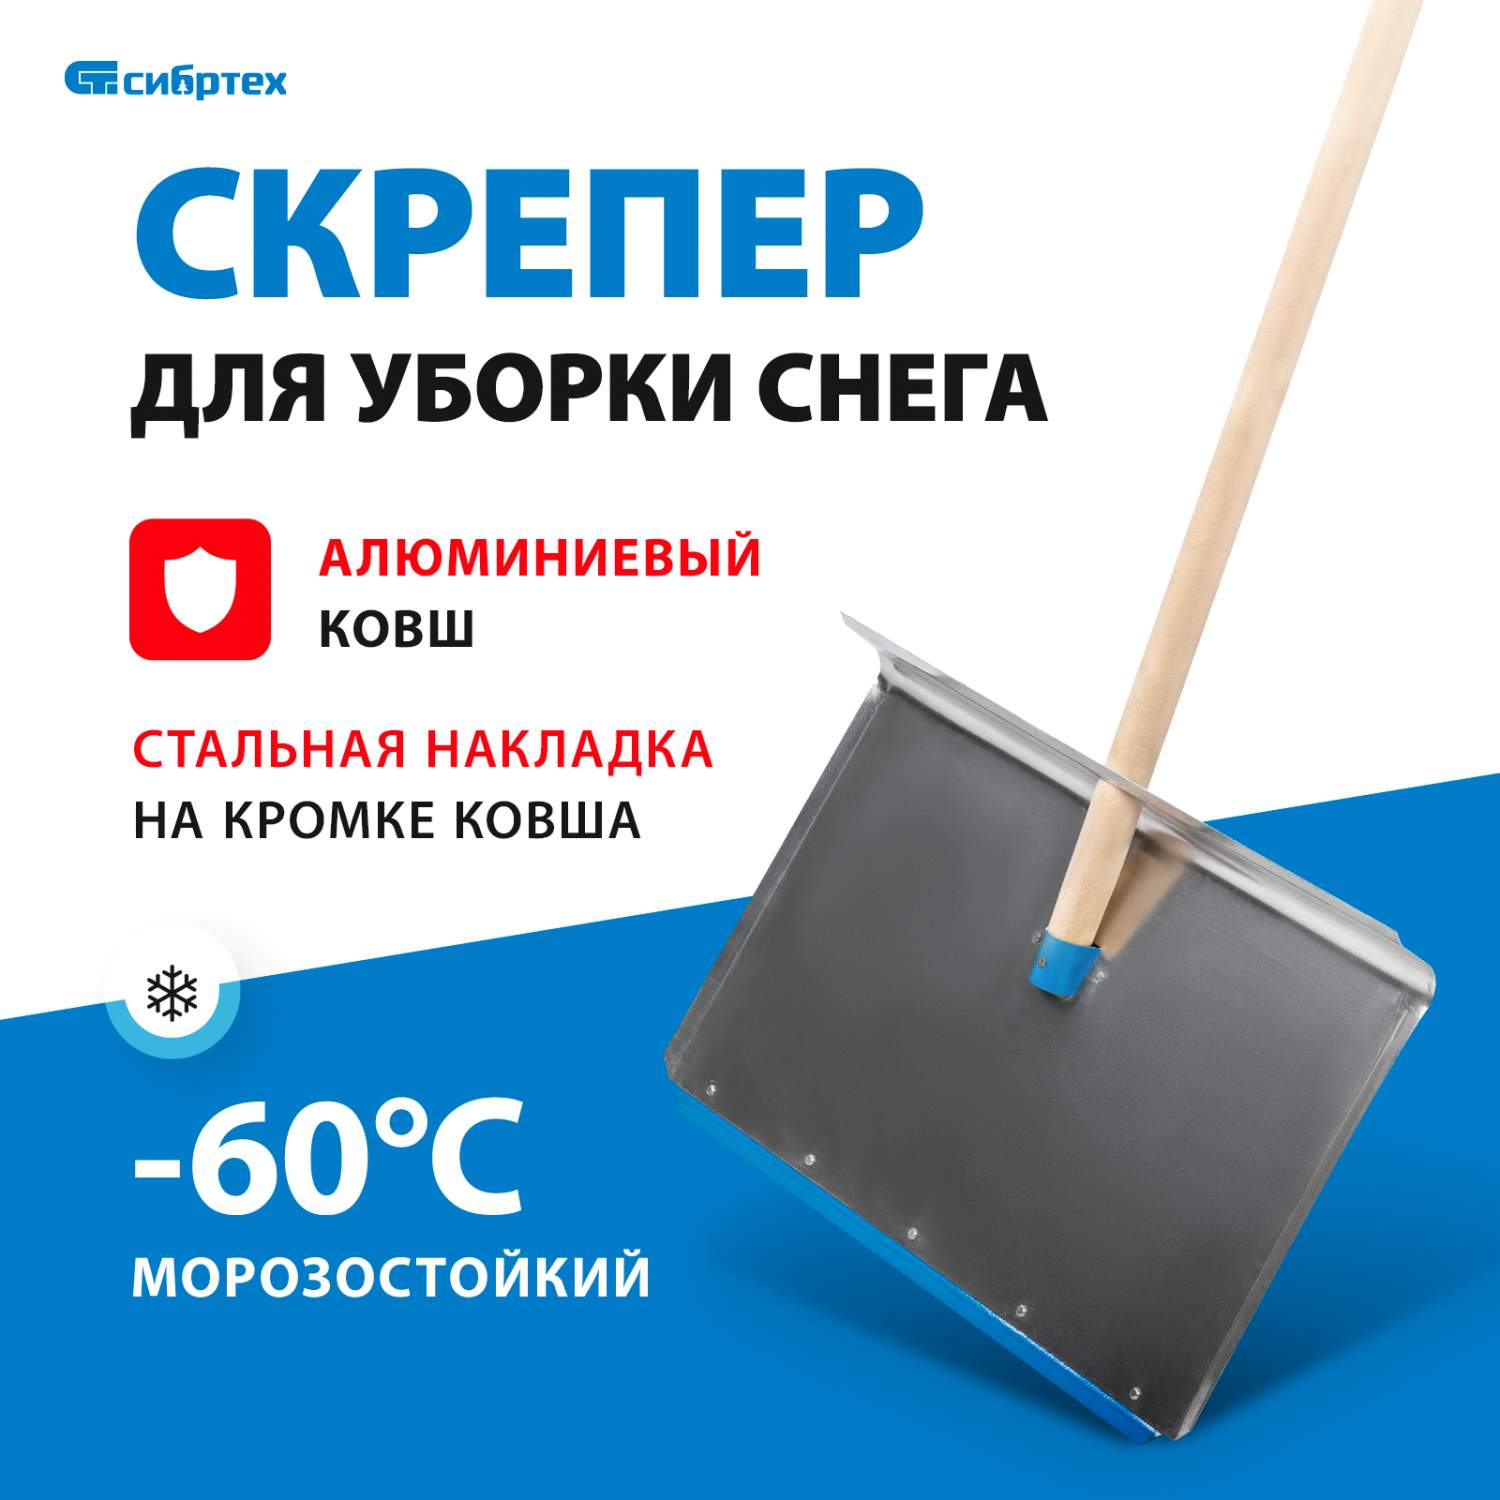 Житель Смоленска Владимир Резников изобрел чудо-лопату для быстрой уборки снега